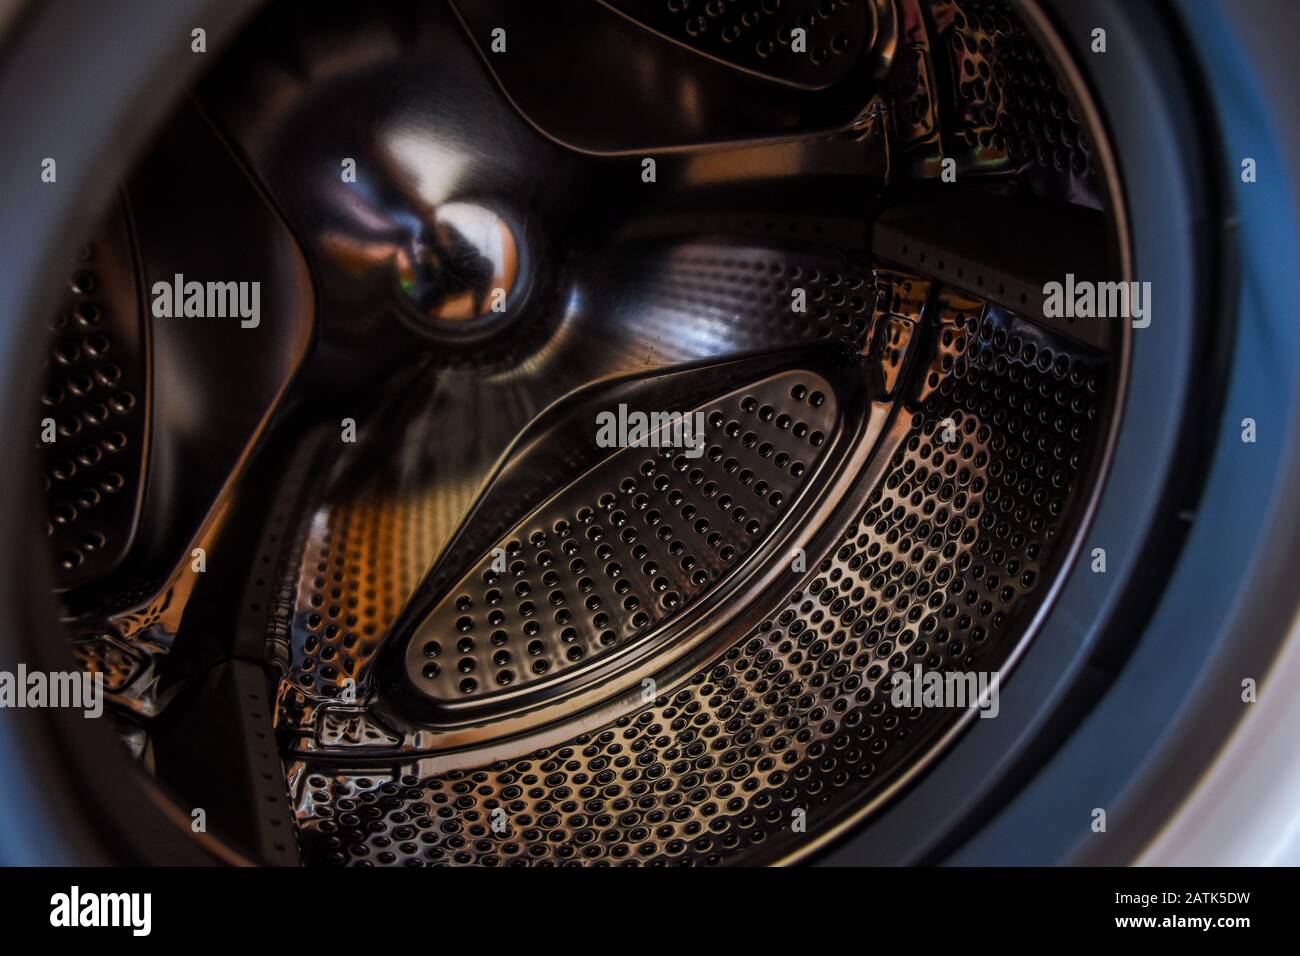 drum washing machine, close-up Stock Photo